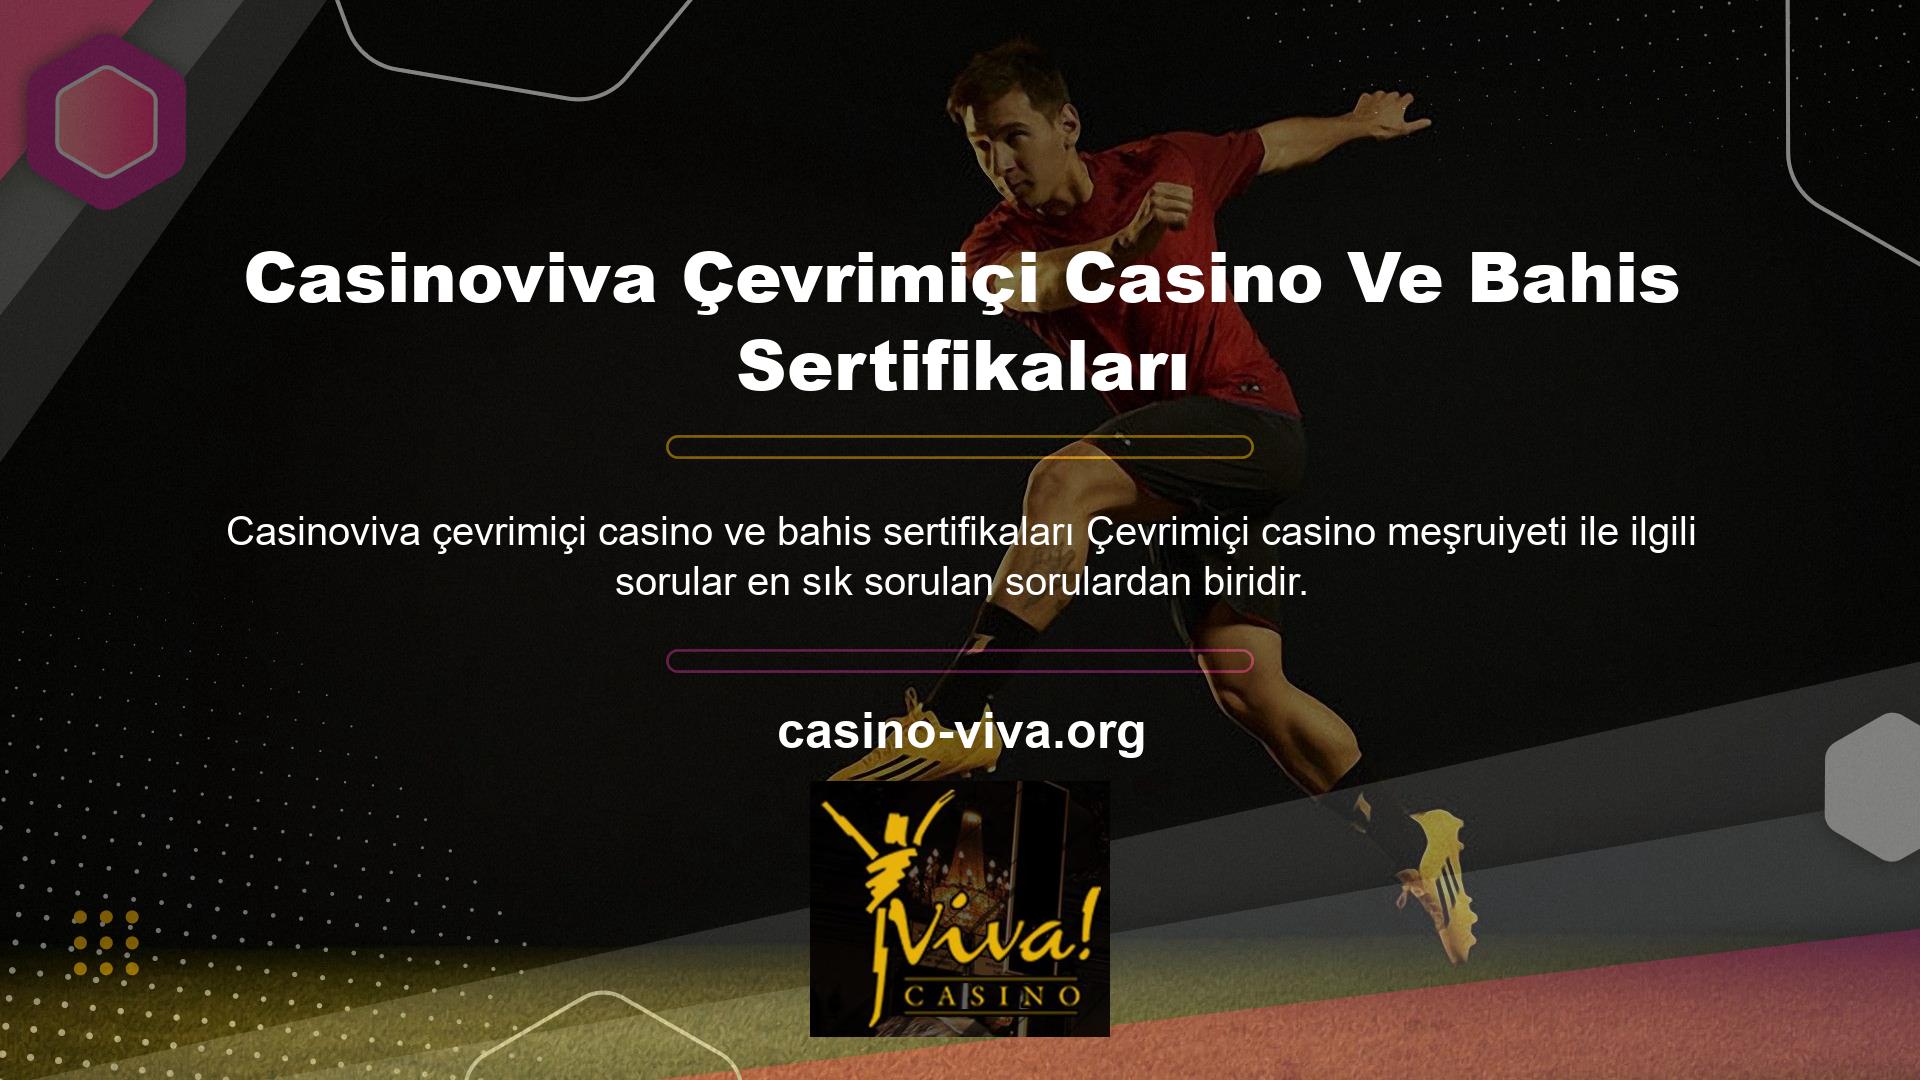 Casinoviva Çevrimiçi Casino Ve Bahis Sertifikaları